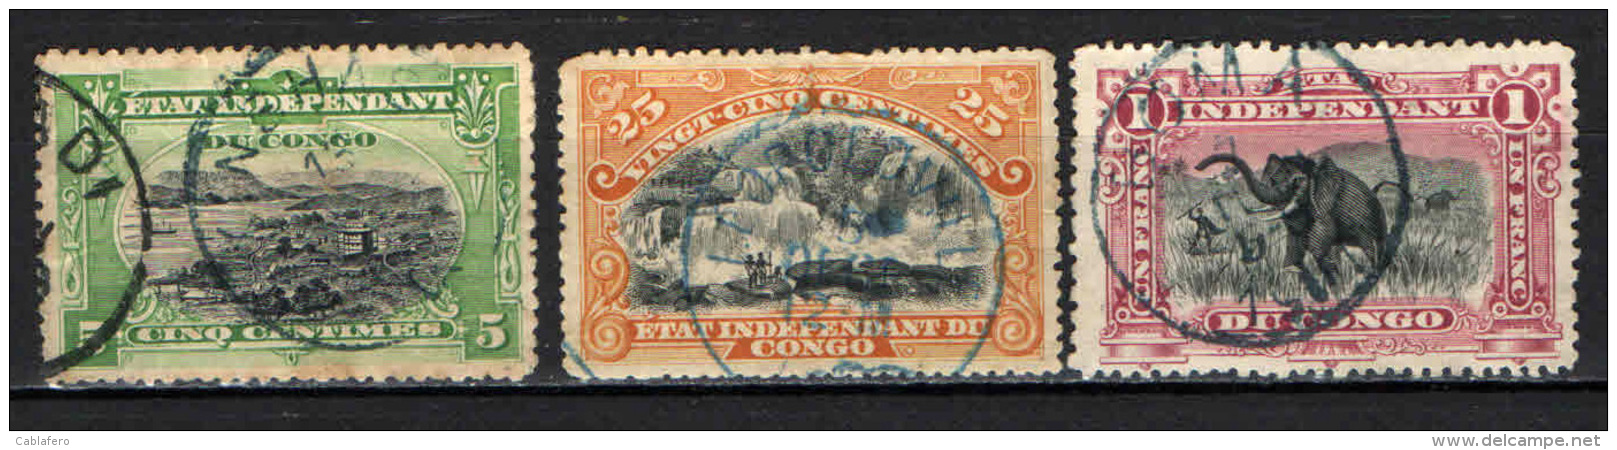 CONGO BELGA - 1894 - PORTO MATADI, CASCATE INKISSI, CACCIA ALL'ELEFANTE - USATI - Usati